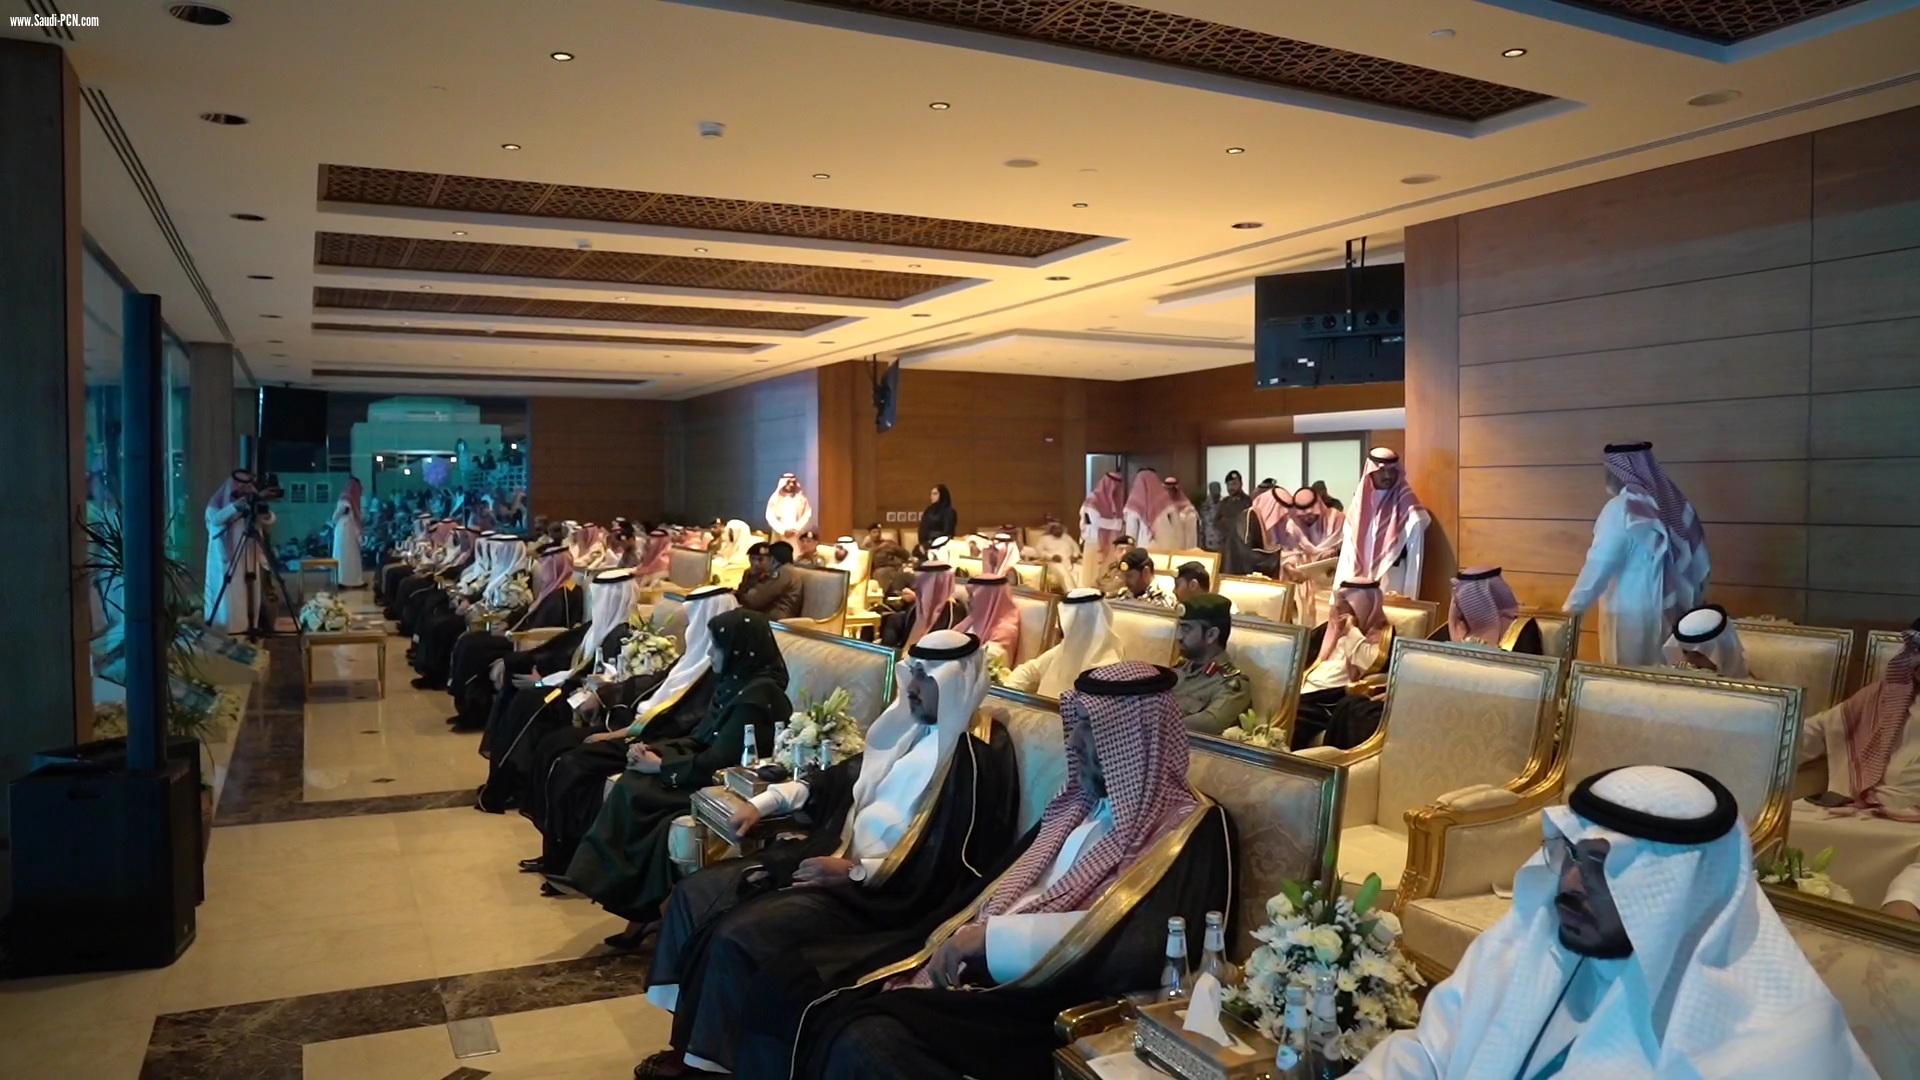 نائب أمير مكة الأمير سعود بن مشعل يتوِّج أكثر من 21 ألف خريج بأمِّ القرى